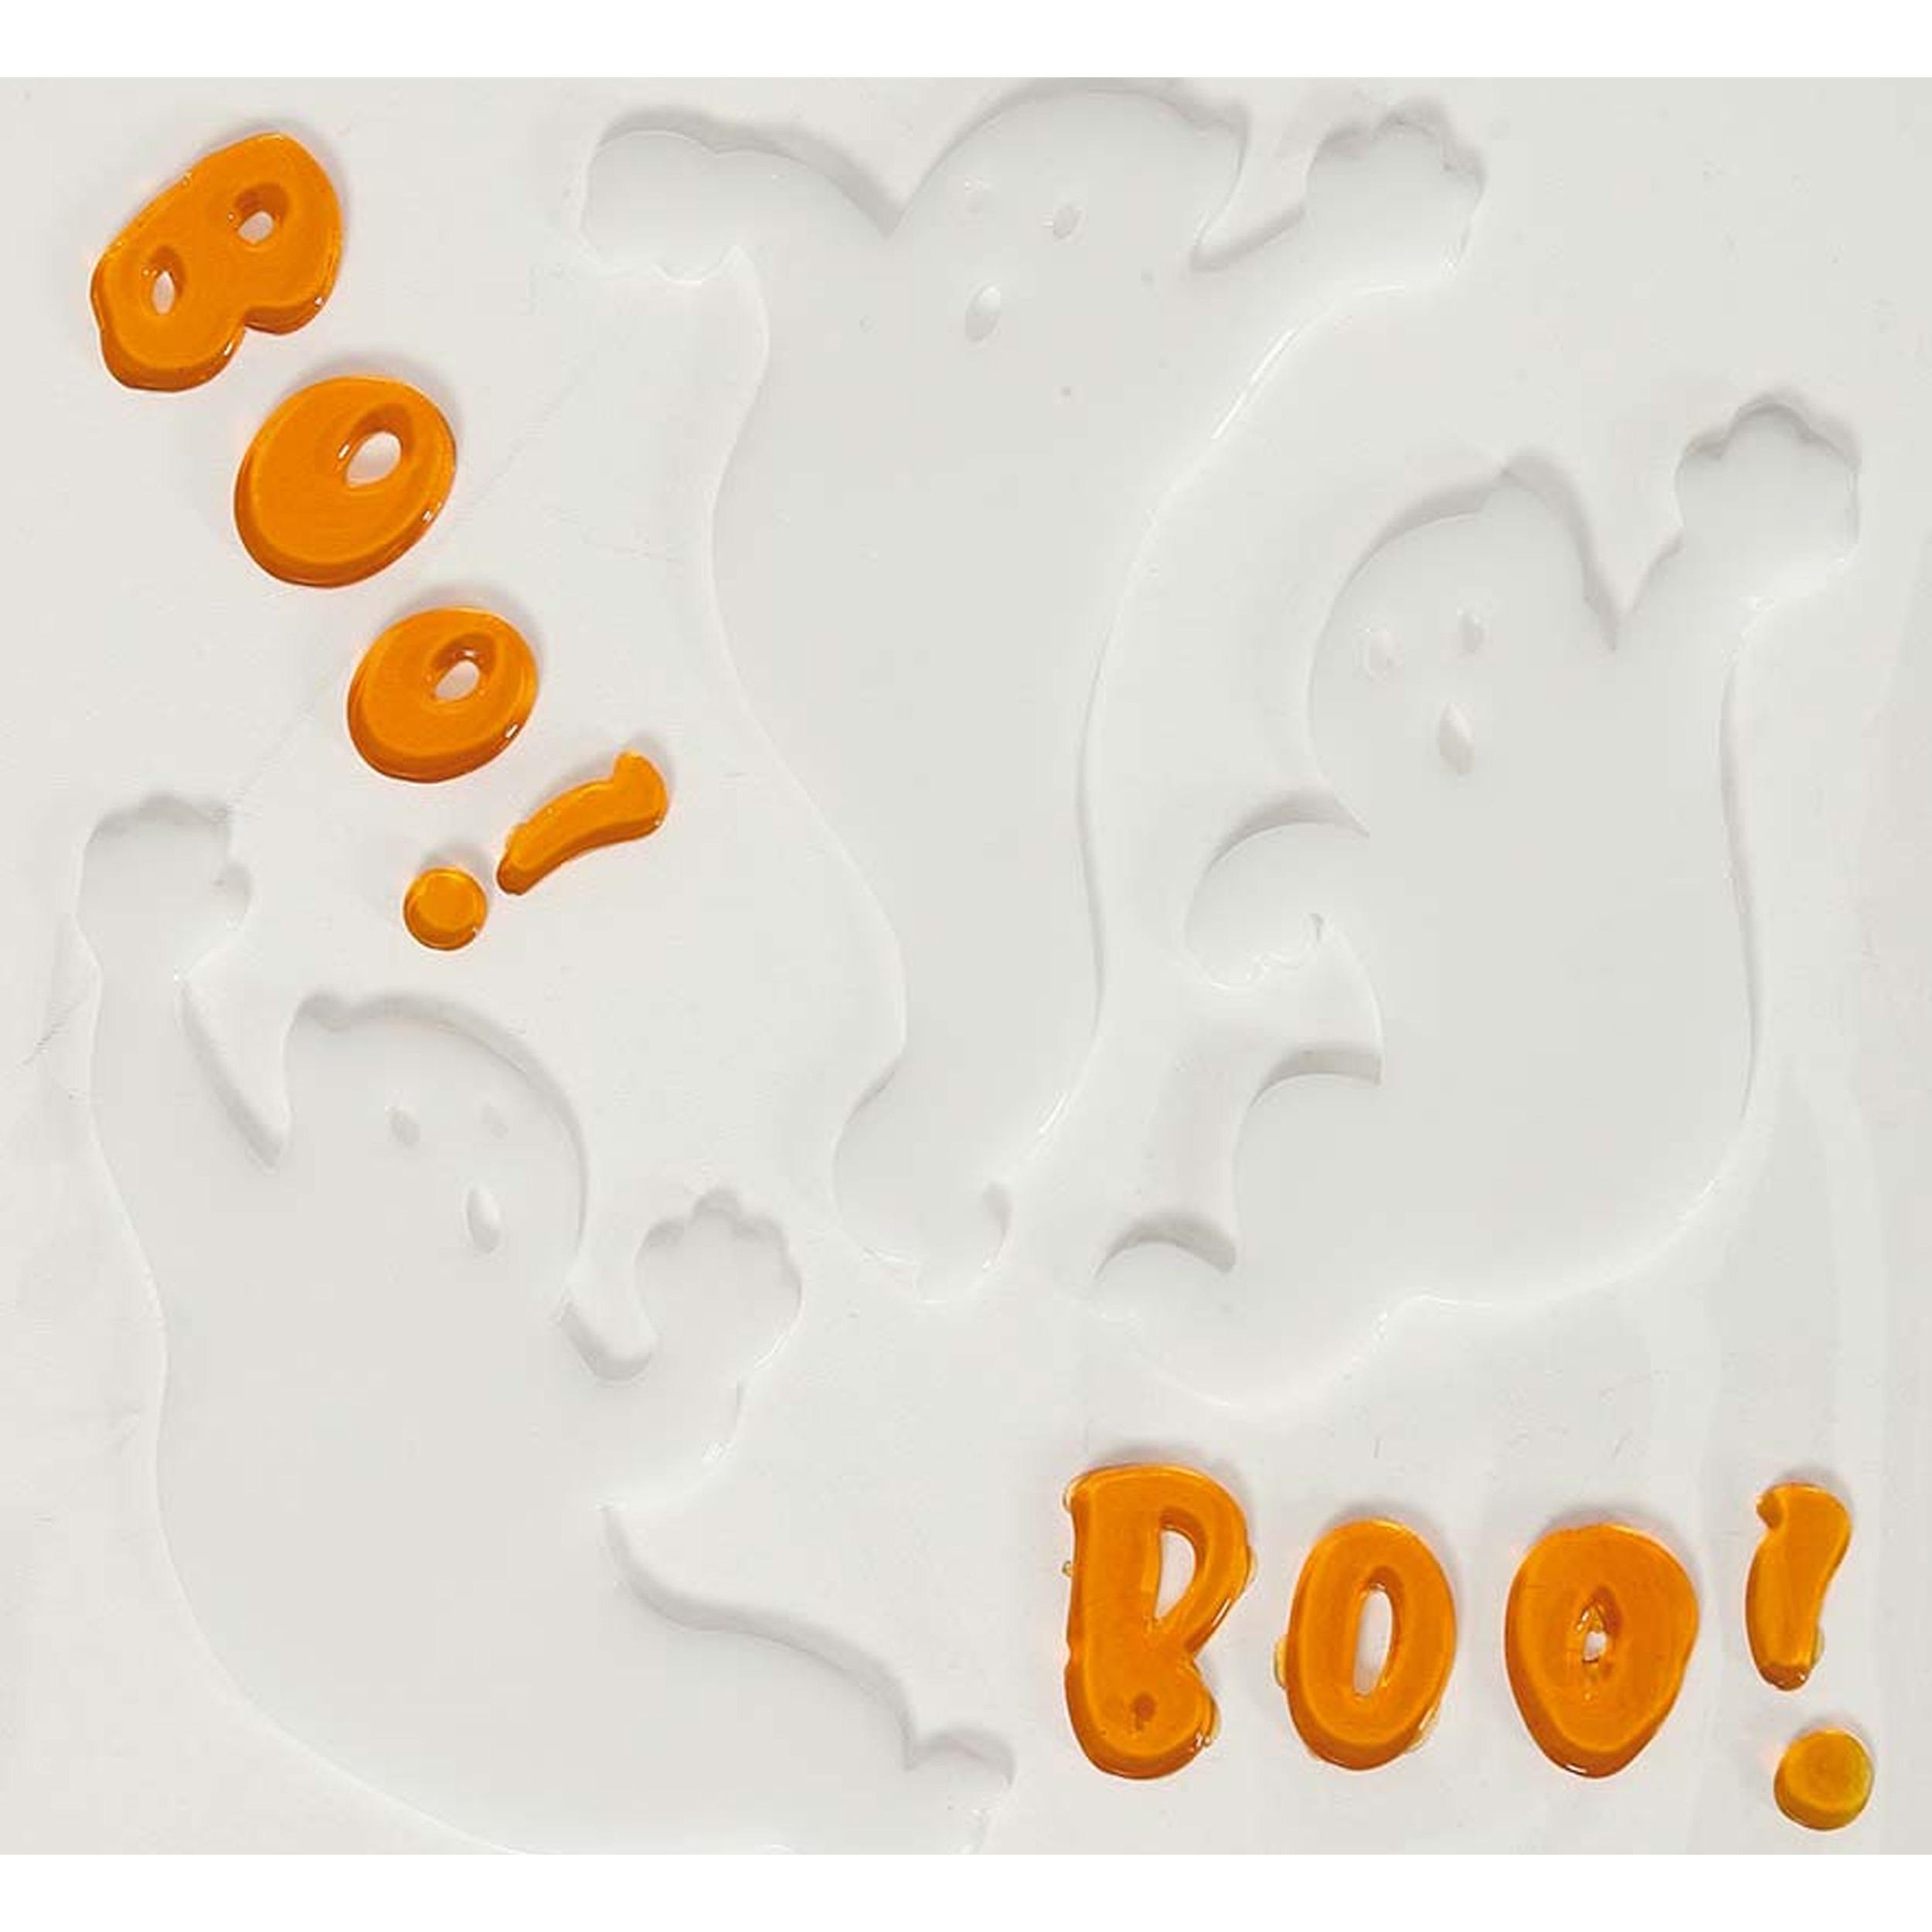 Horror gel raamstickers spookjes 25 x 25 cm wit-oranje Halloween thema decoratie-versiering